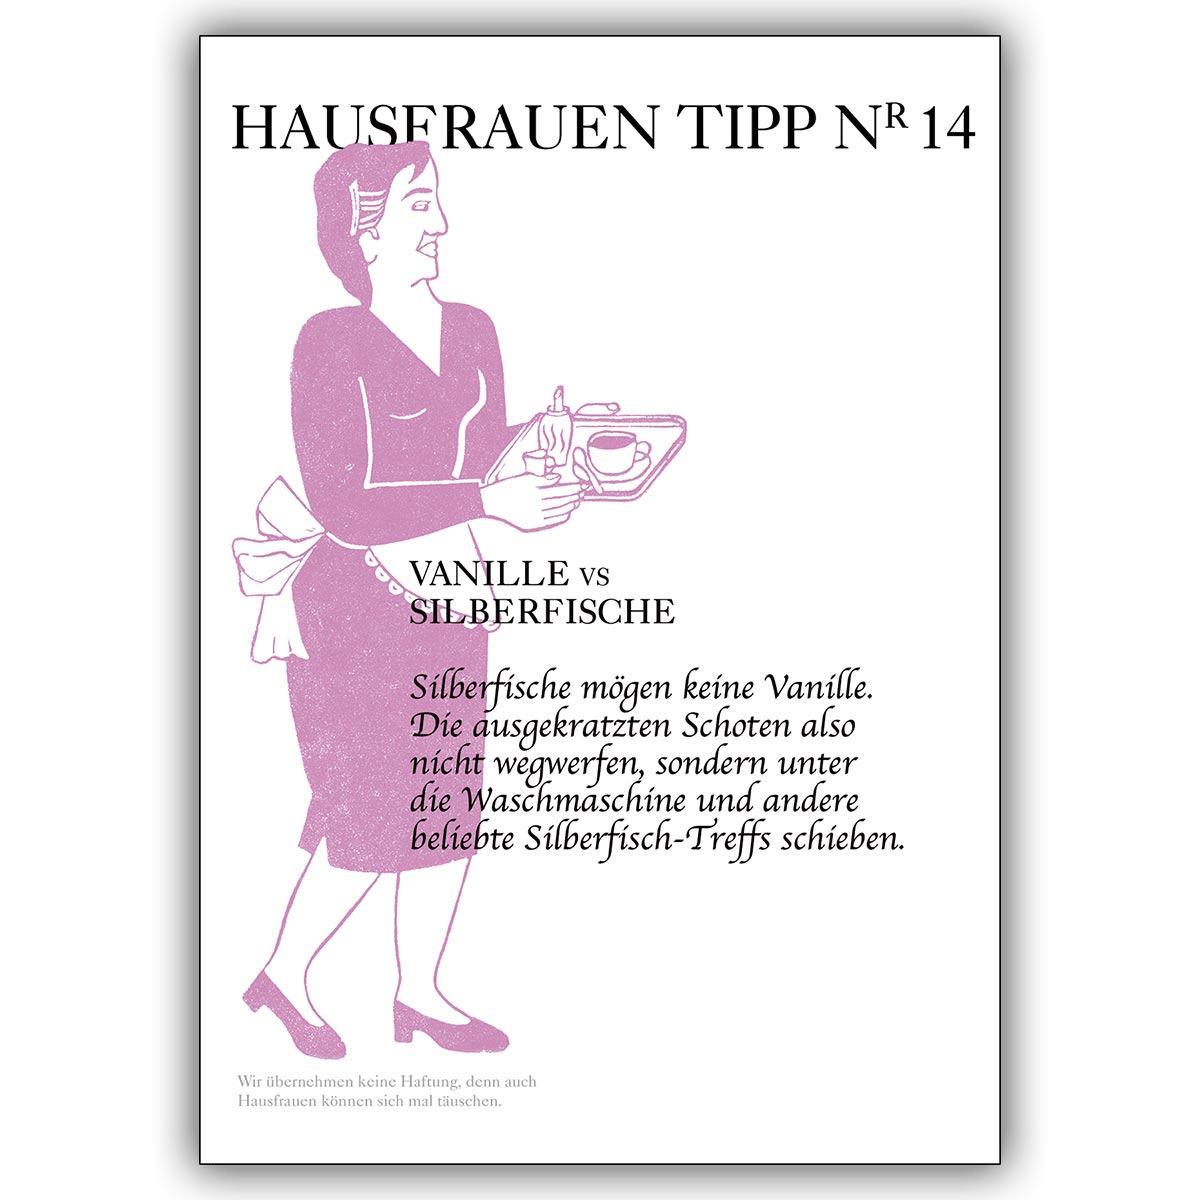 Schlaue Grusskarte gegen ungebetene Gäste mit Hausfrauen Tipp Nr. 14: Silberfisch